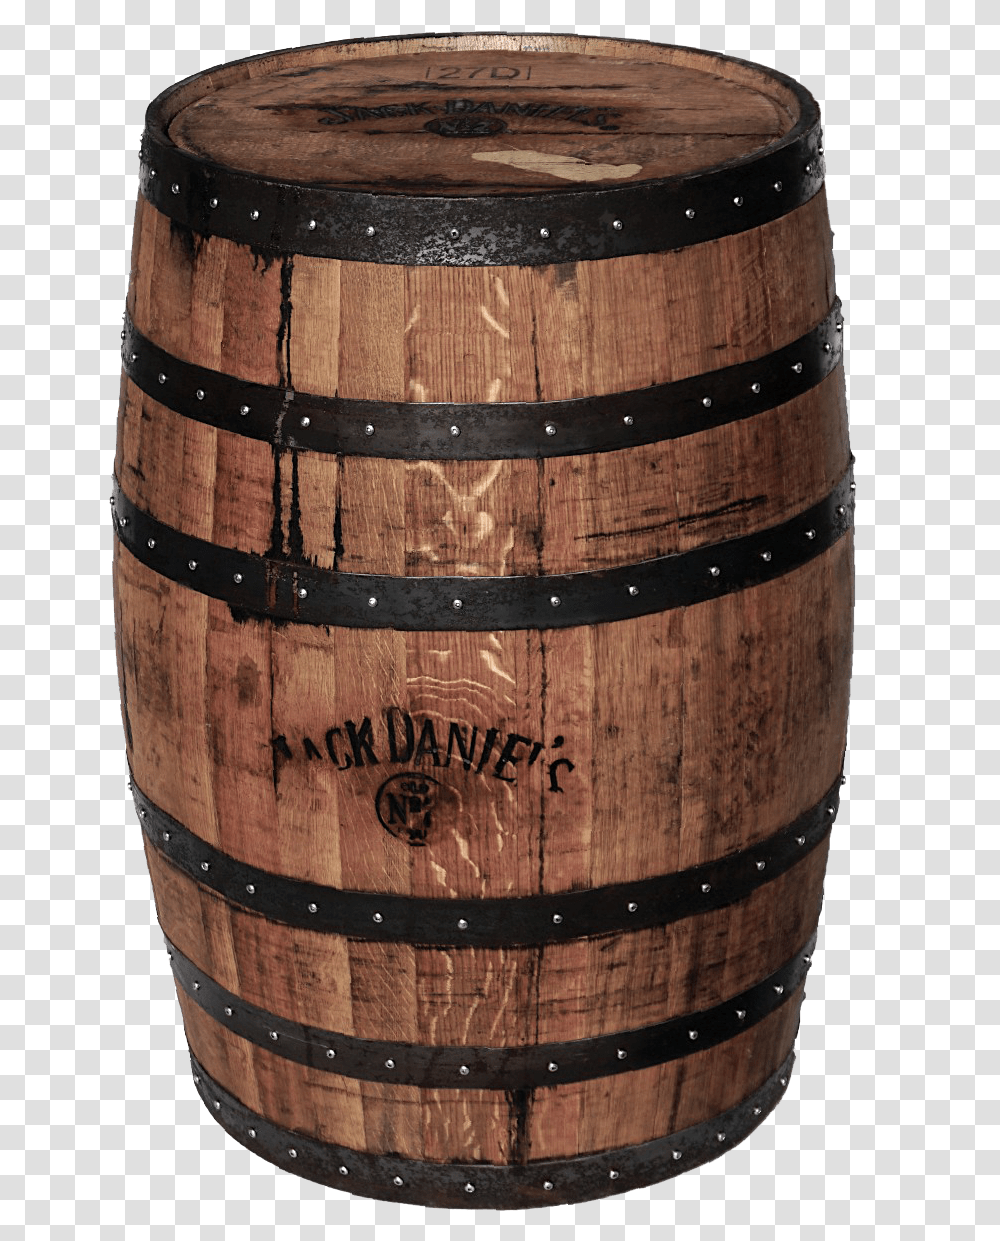 Barrel Image Barrel Of Whisky, Keg, Jacuzzi, Tub, Hot Tub Transparent Png